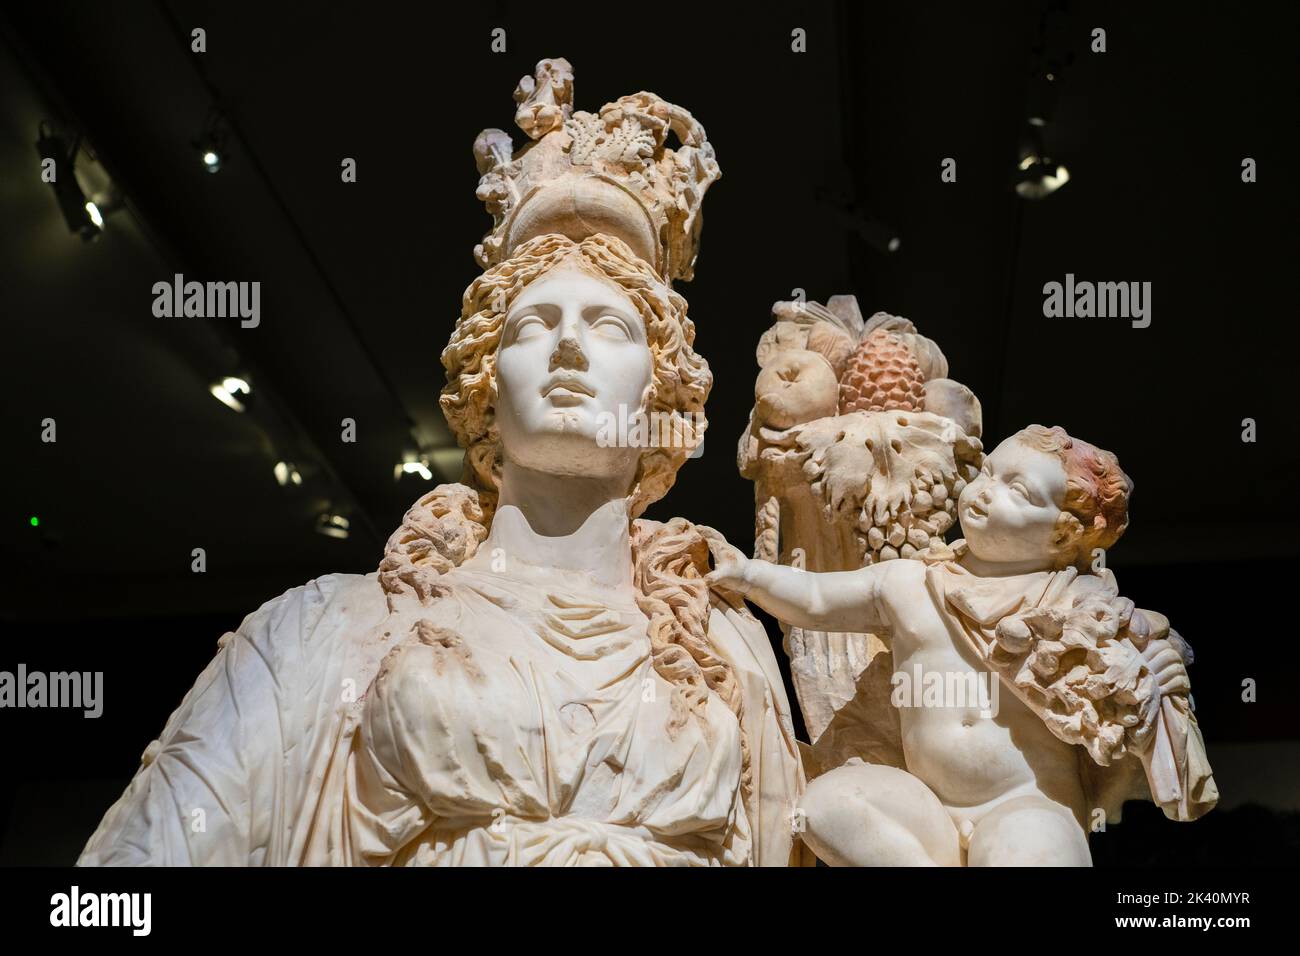 Statue de Tyche, déesse de Fortune dans la mythologie grecque. Sculpture de l'époque romaine. Musée archéologique d'Istanbul, Turquie. Banque D'Images